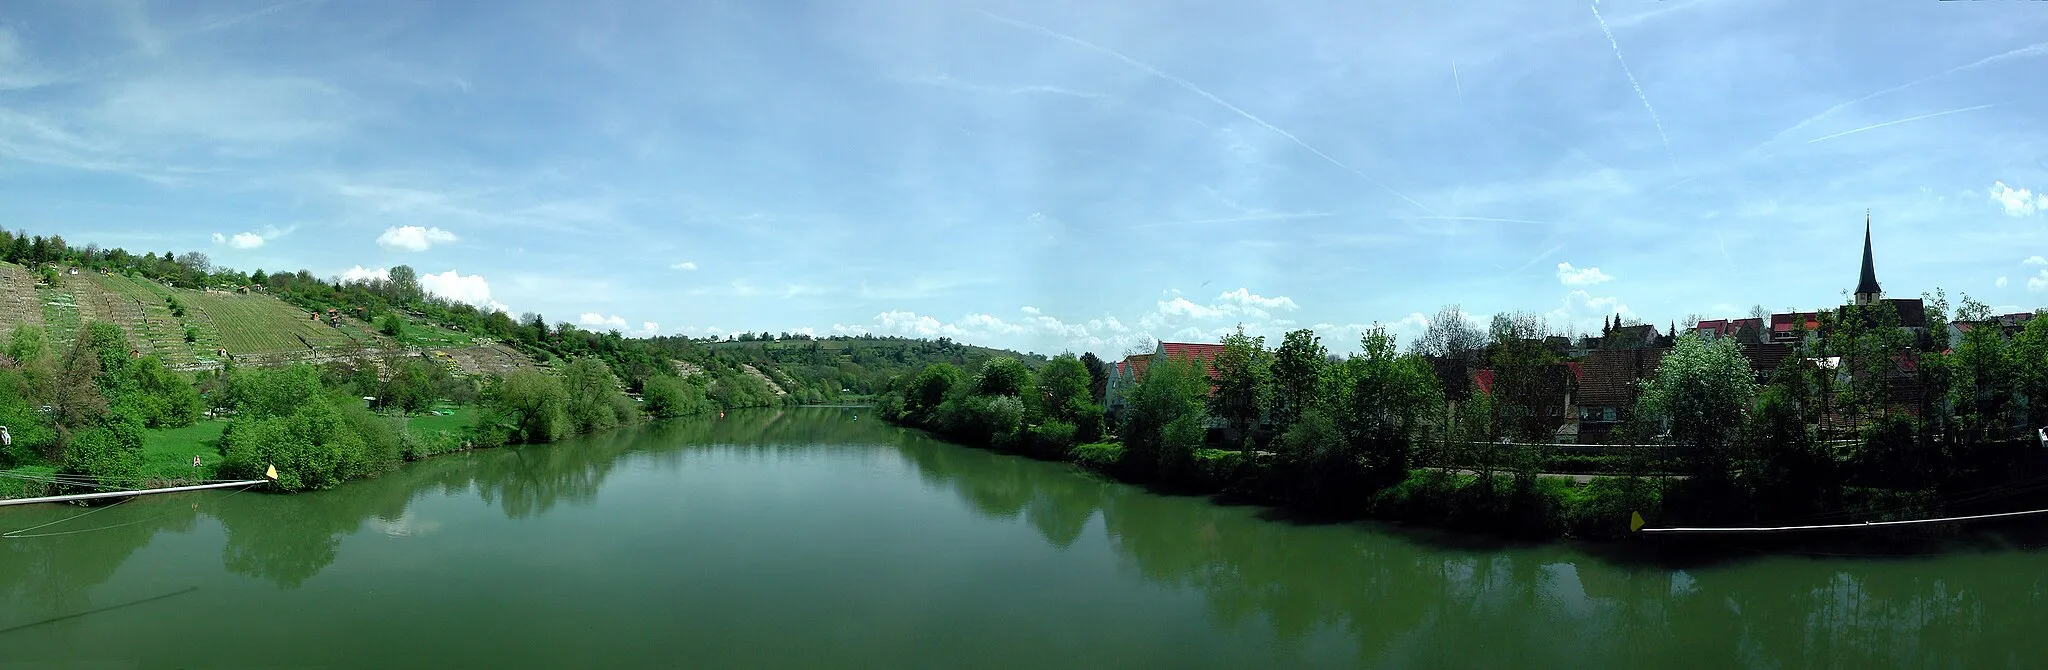 Bild von Benningen am Neckar